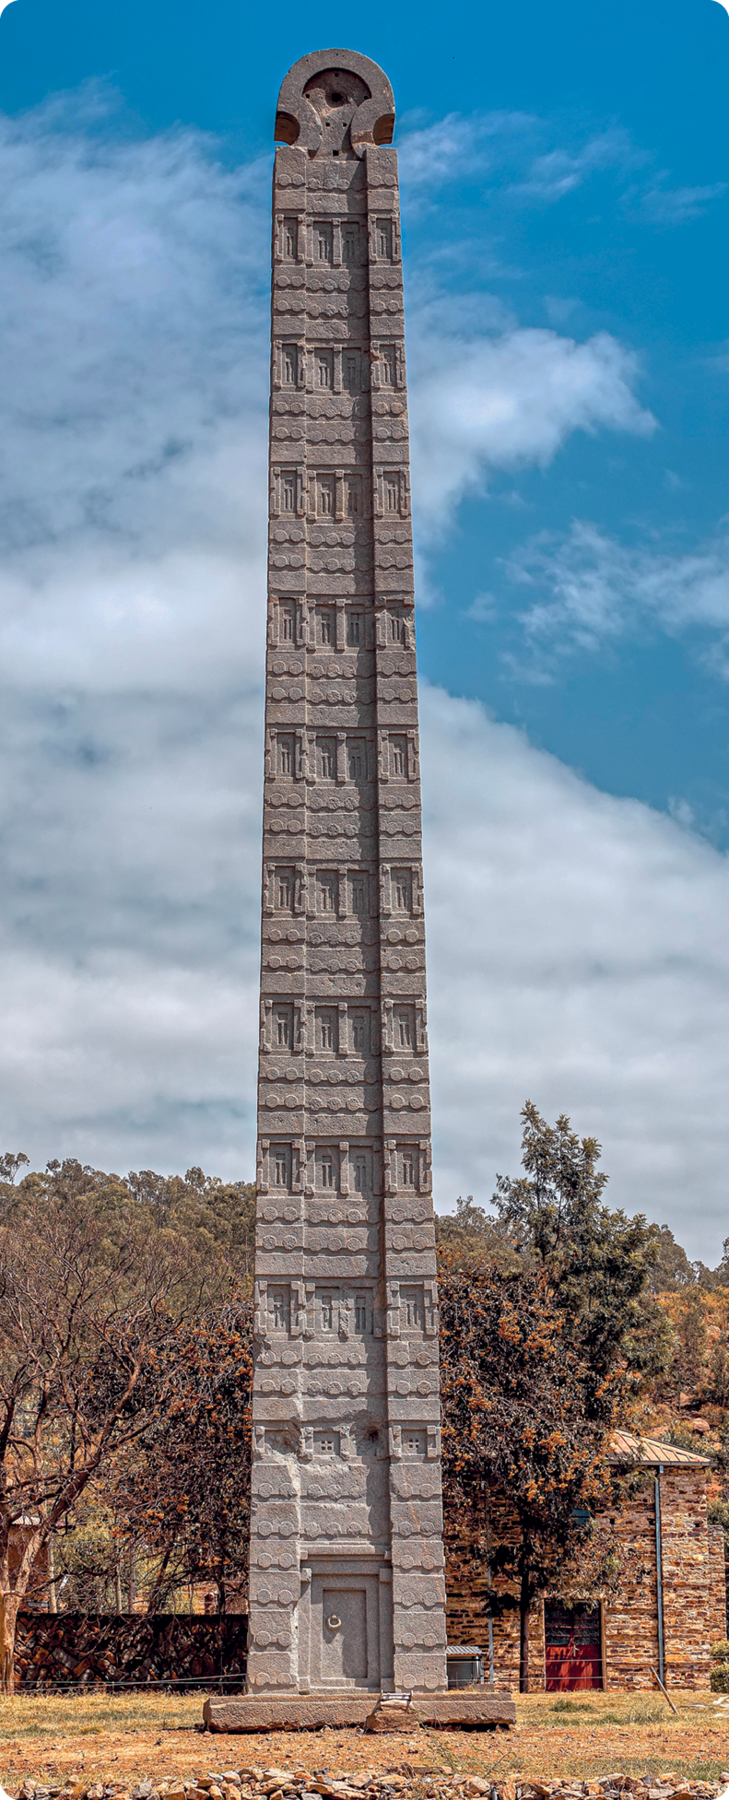 Obelisco. Escultura de pedra vertical com base quadrangular, contendo alguns detalhes em relevo. Atrás, algumas árvores.